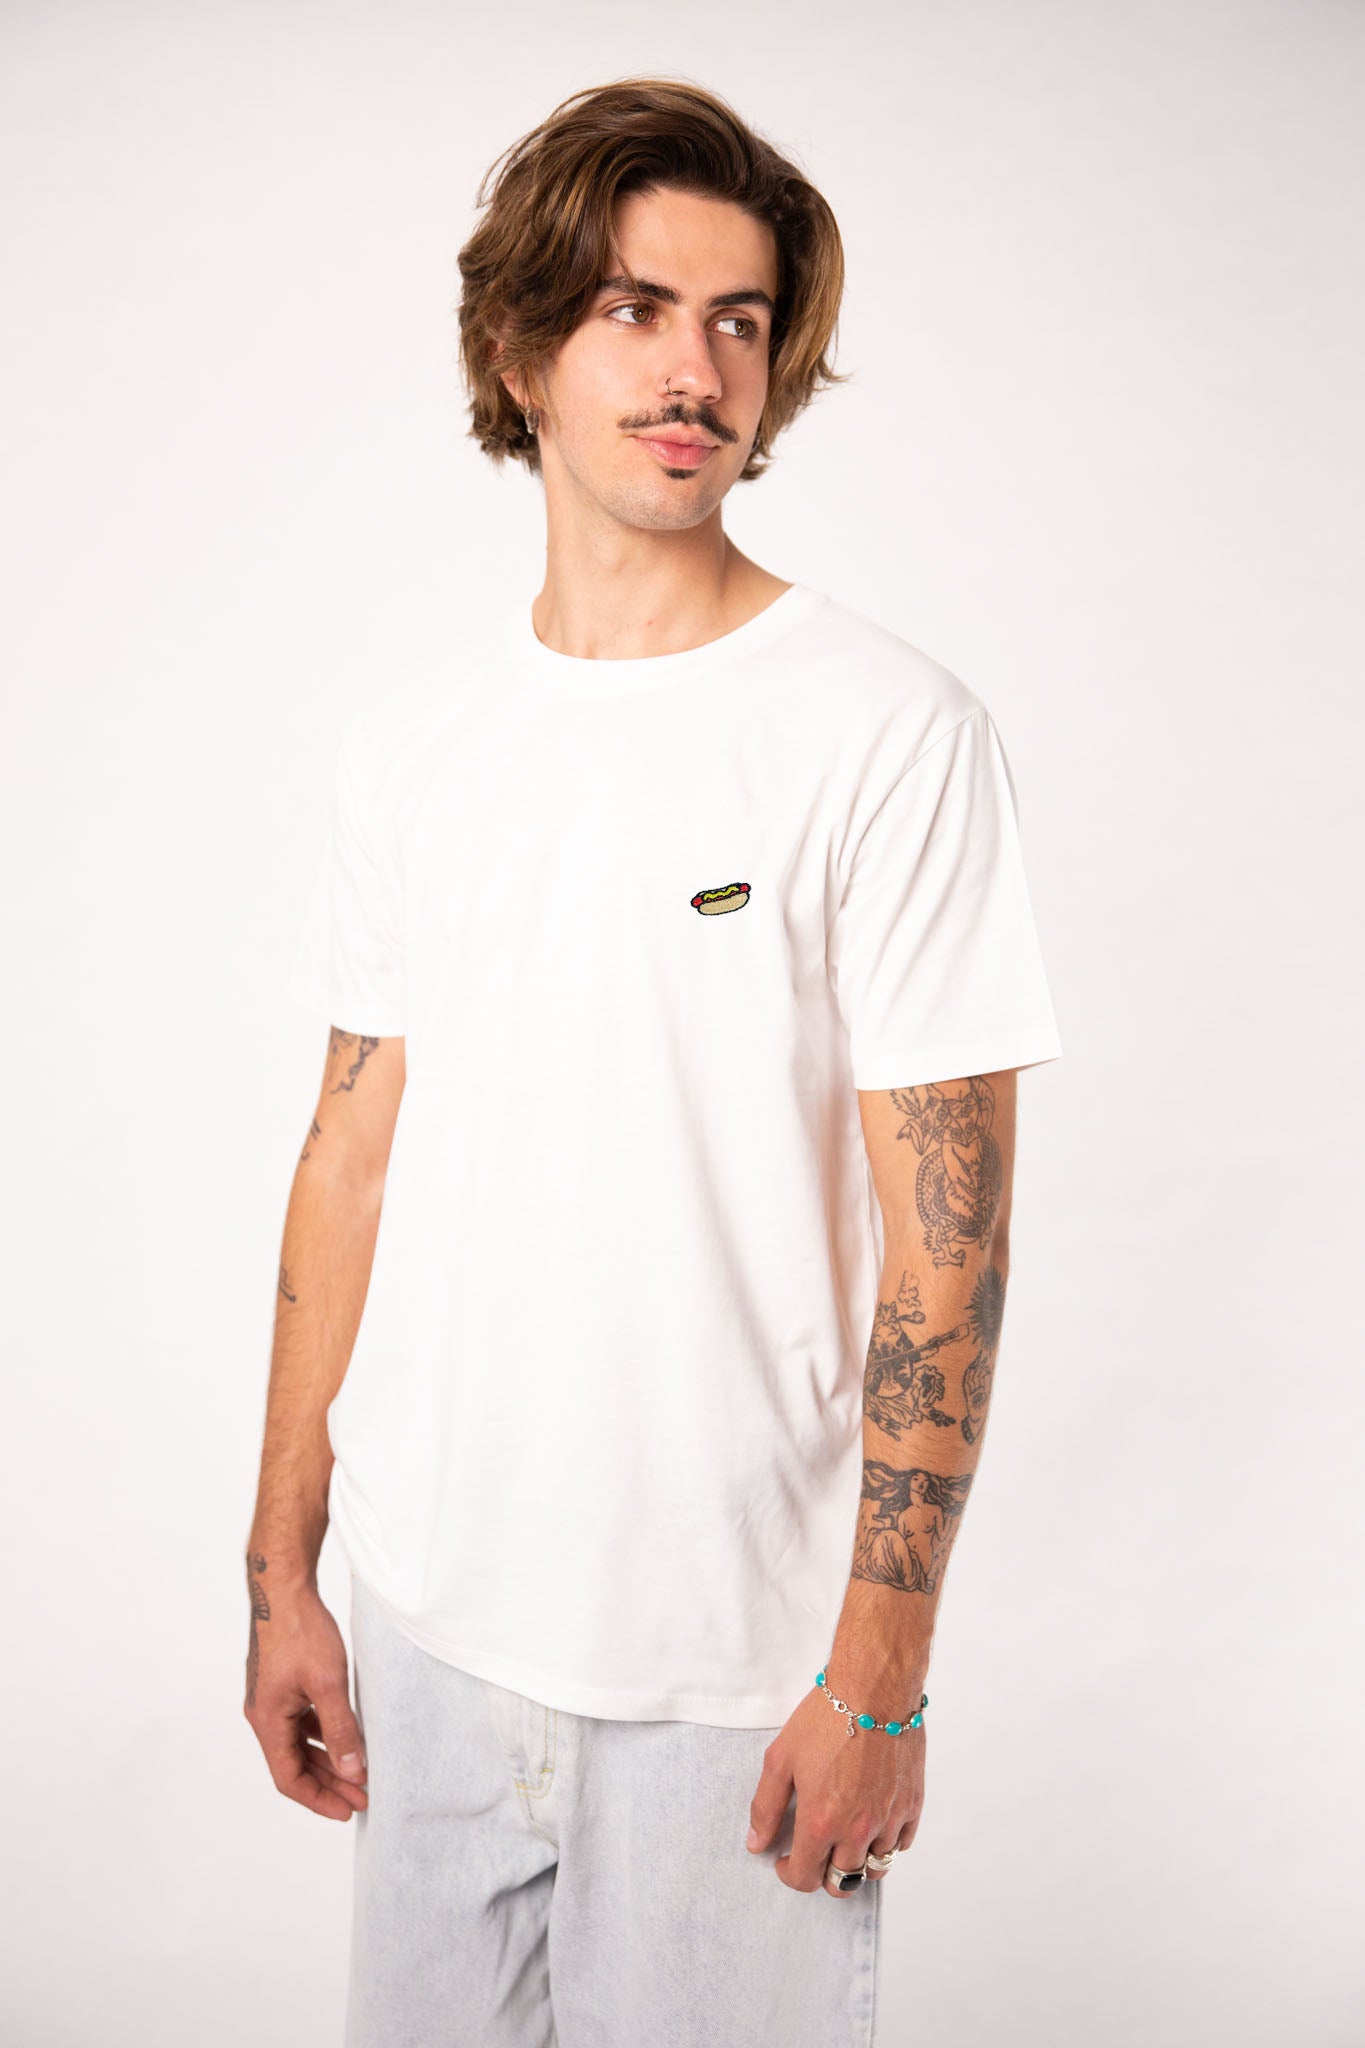 Hot Dog | Besticktes Männer Bio Baumwoll T-Shirt